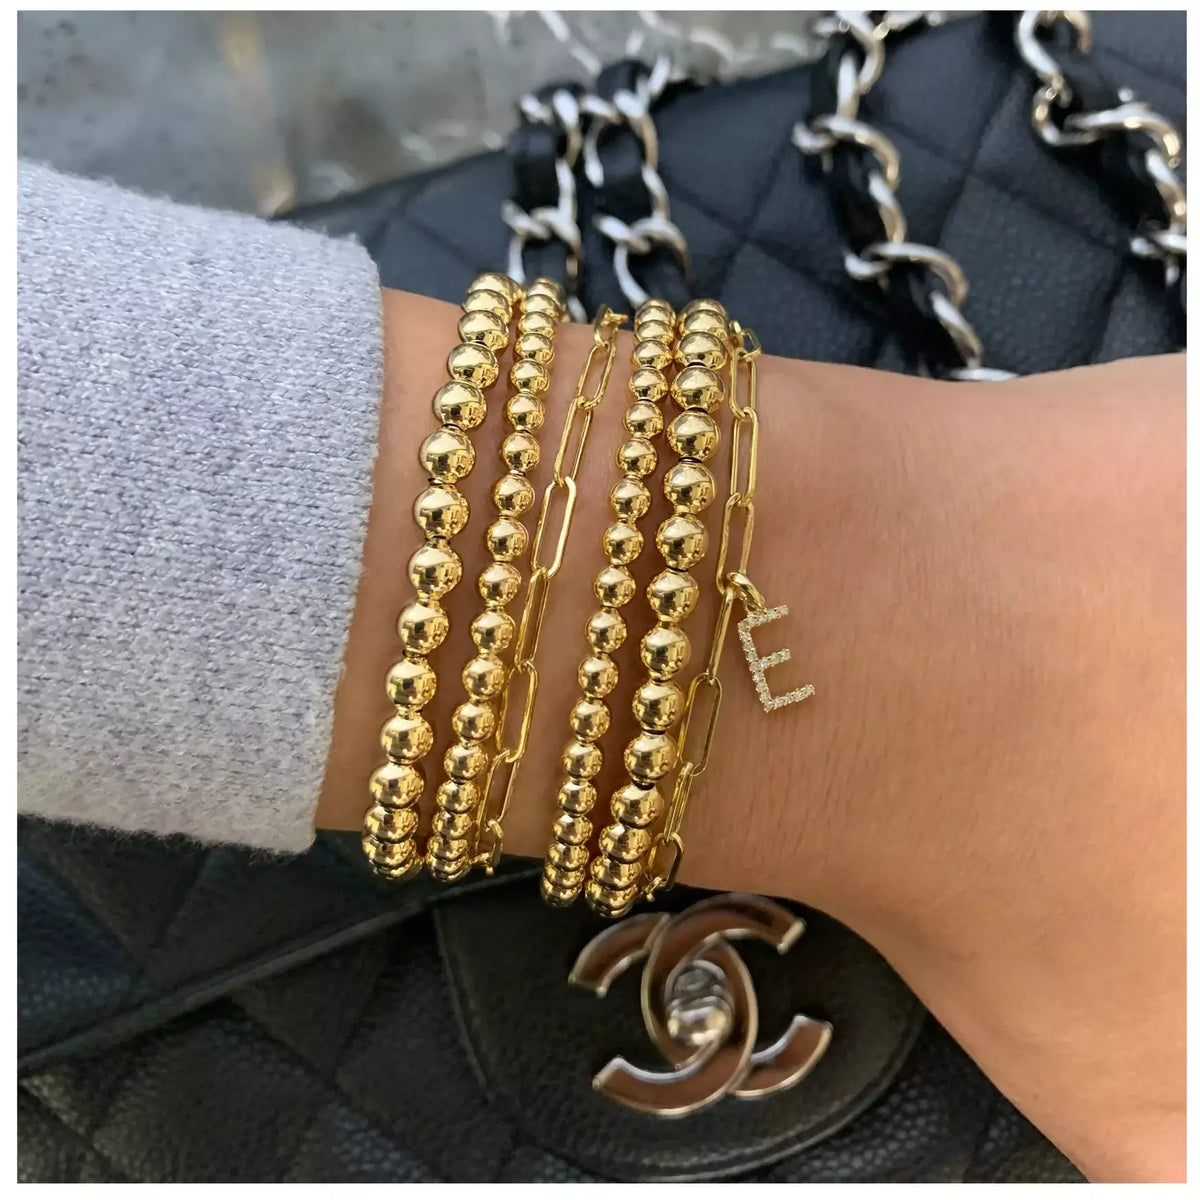 18k Gold Beaded Stretch Bracelet